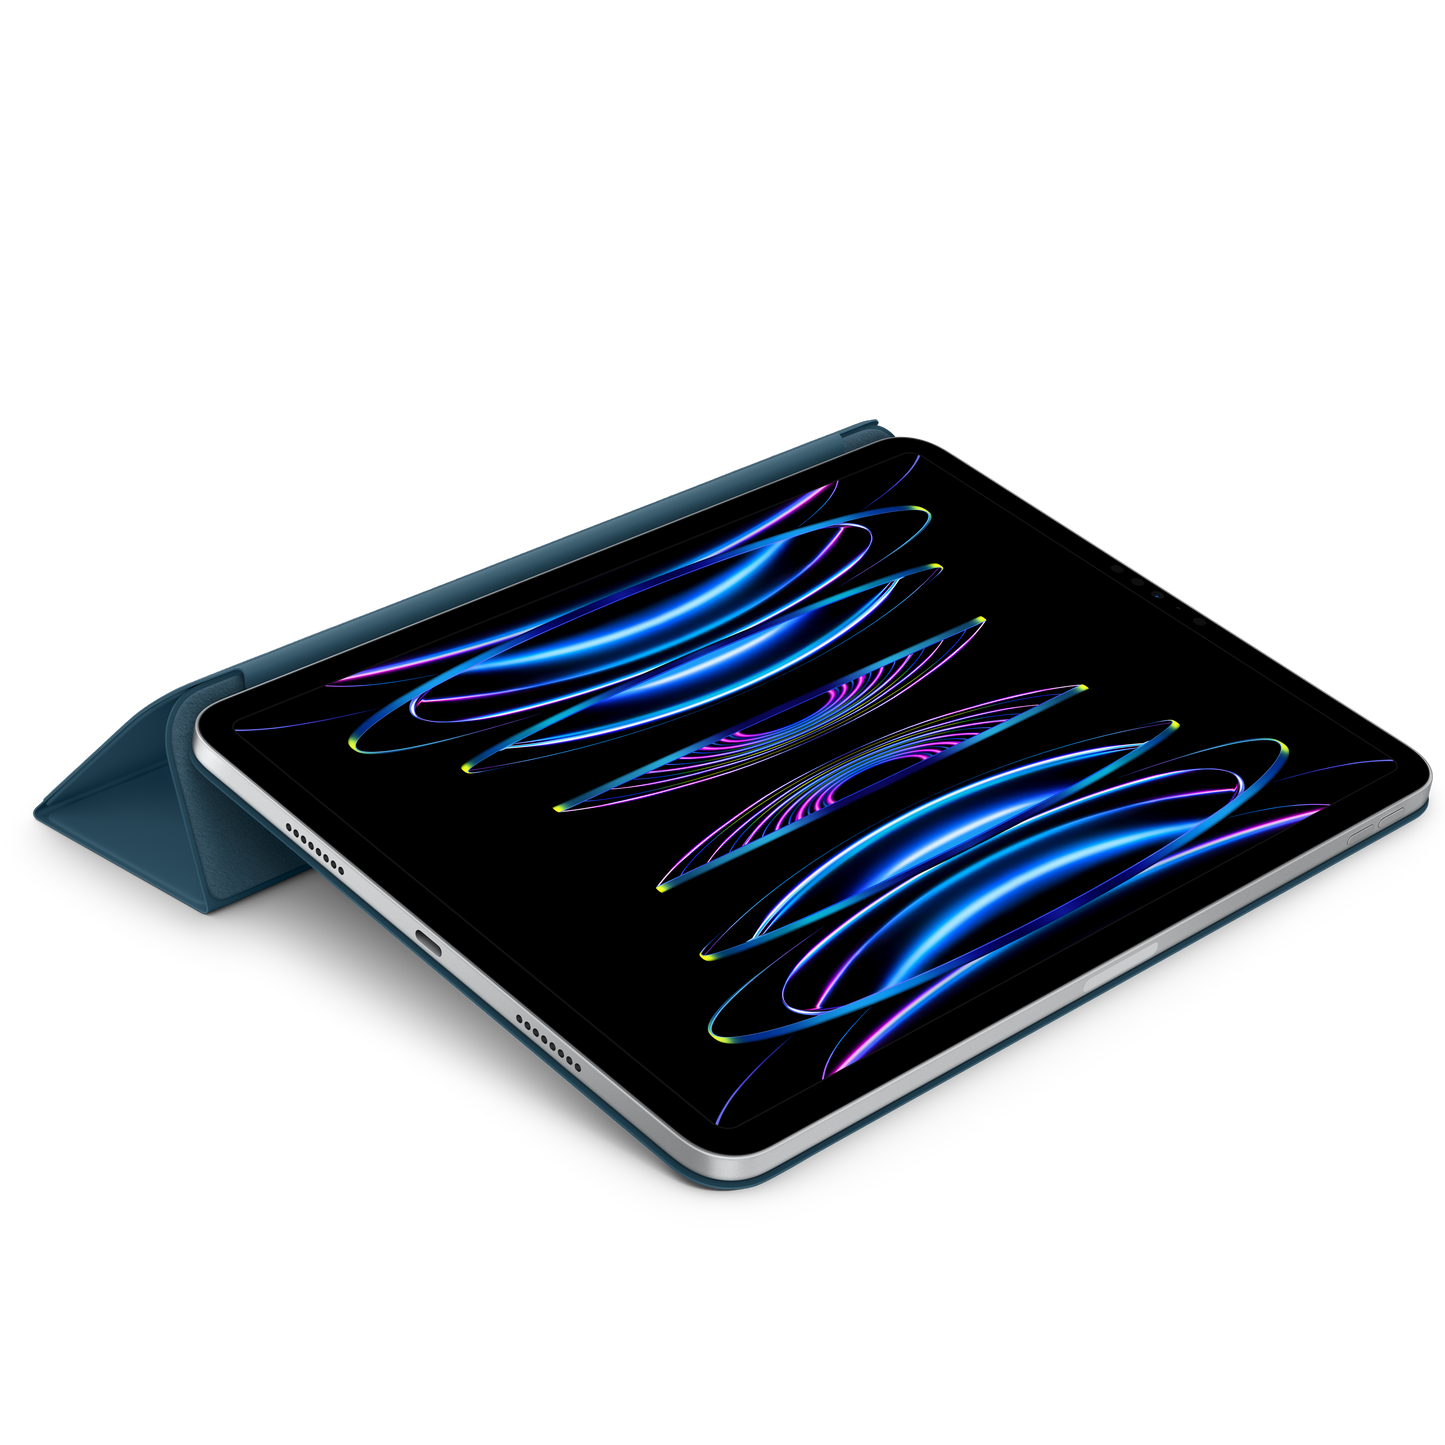 Funda Smart Folio para el iPad Pro de 11 pulgadas (4.ª generación) - Azul mar